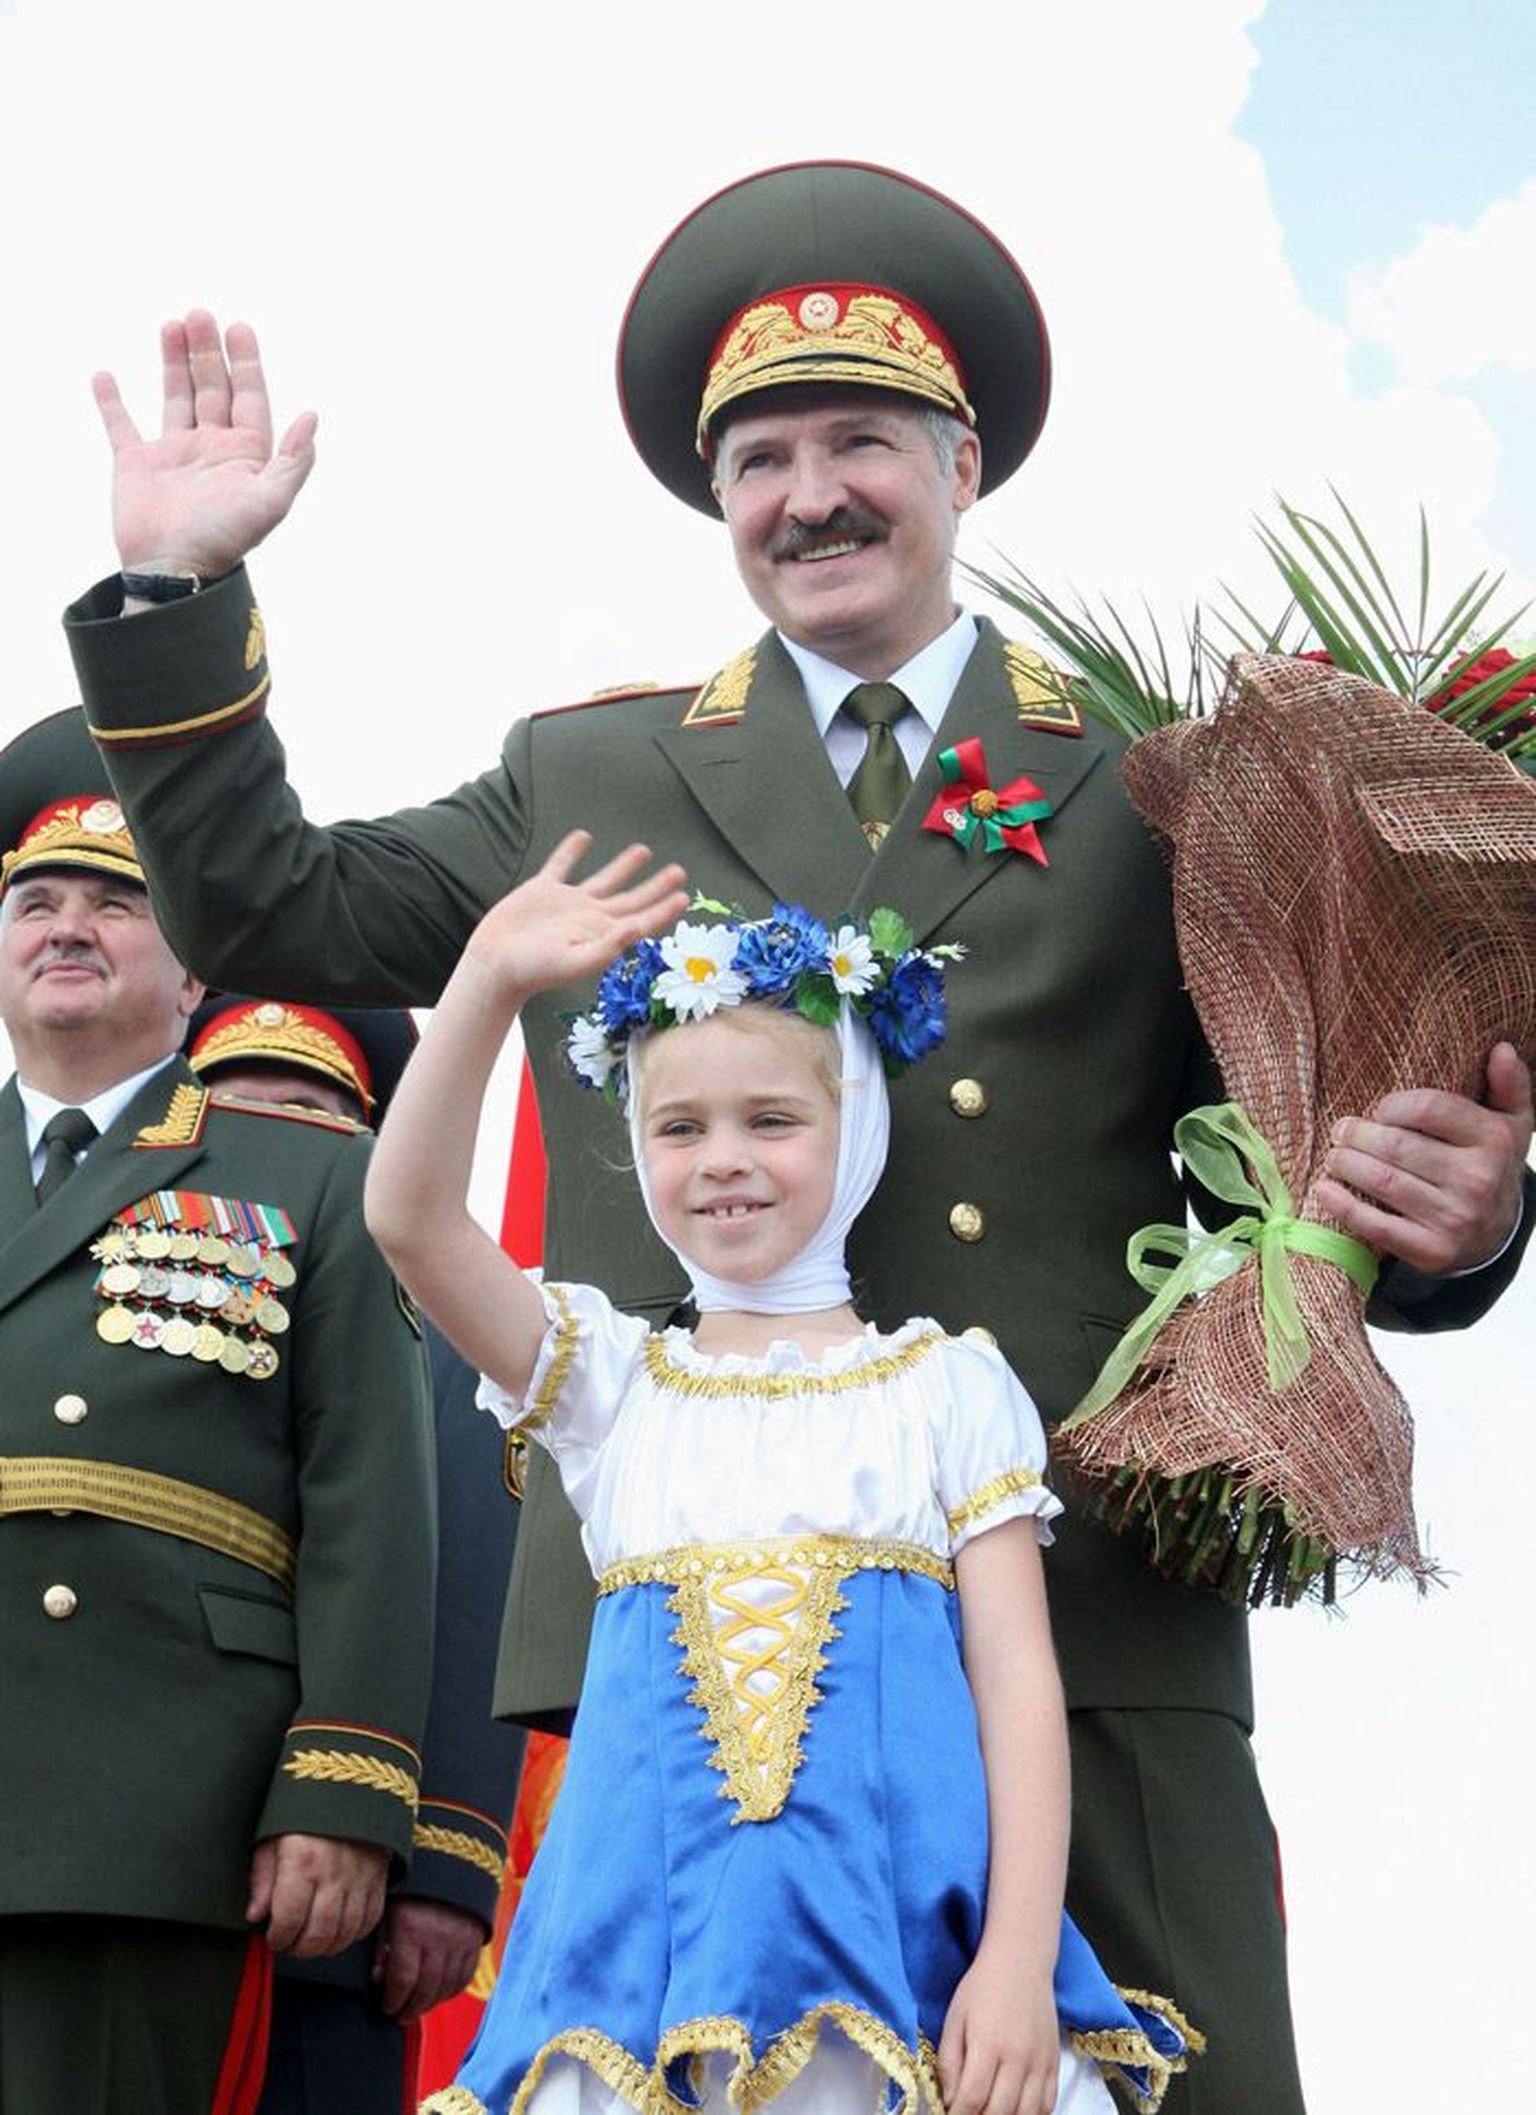 President Lukašenka koos rahvariides tüdrukukesega Valgevene vabastamise 65. aastapäeva tähistamisel: nõukogulikus stiilis suurejooneline sõjaväeparaad ja riigijuhtide sütitavad sõnavõtud. Minsk, 3. juuli, 2009.